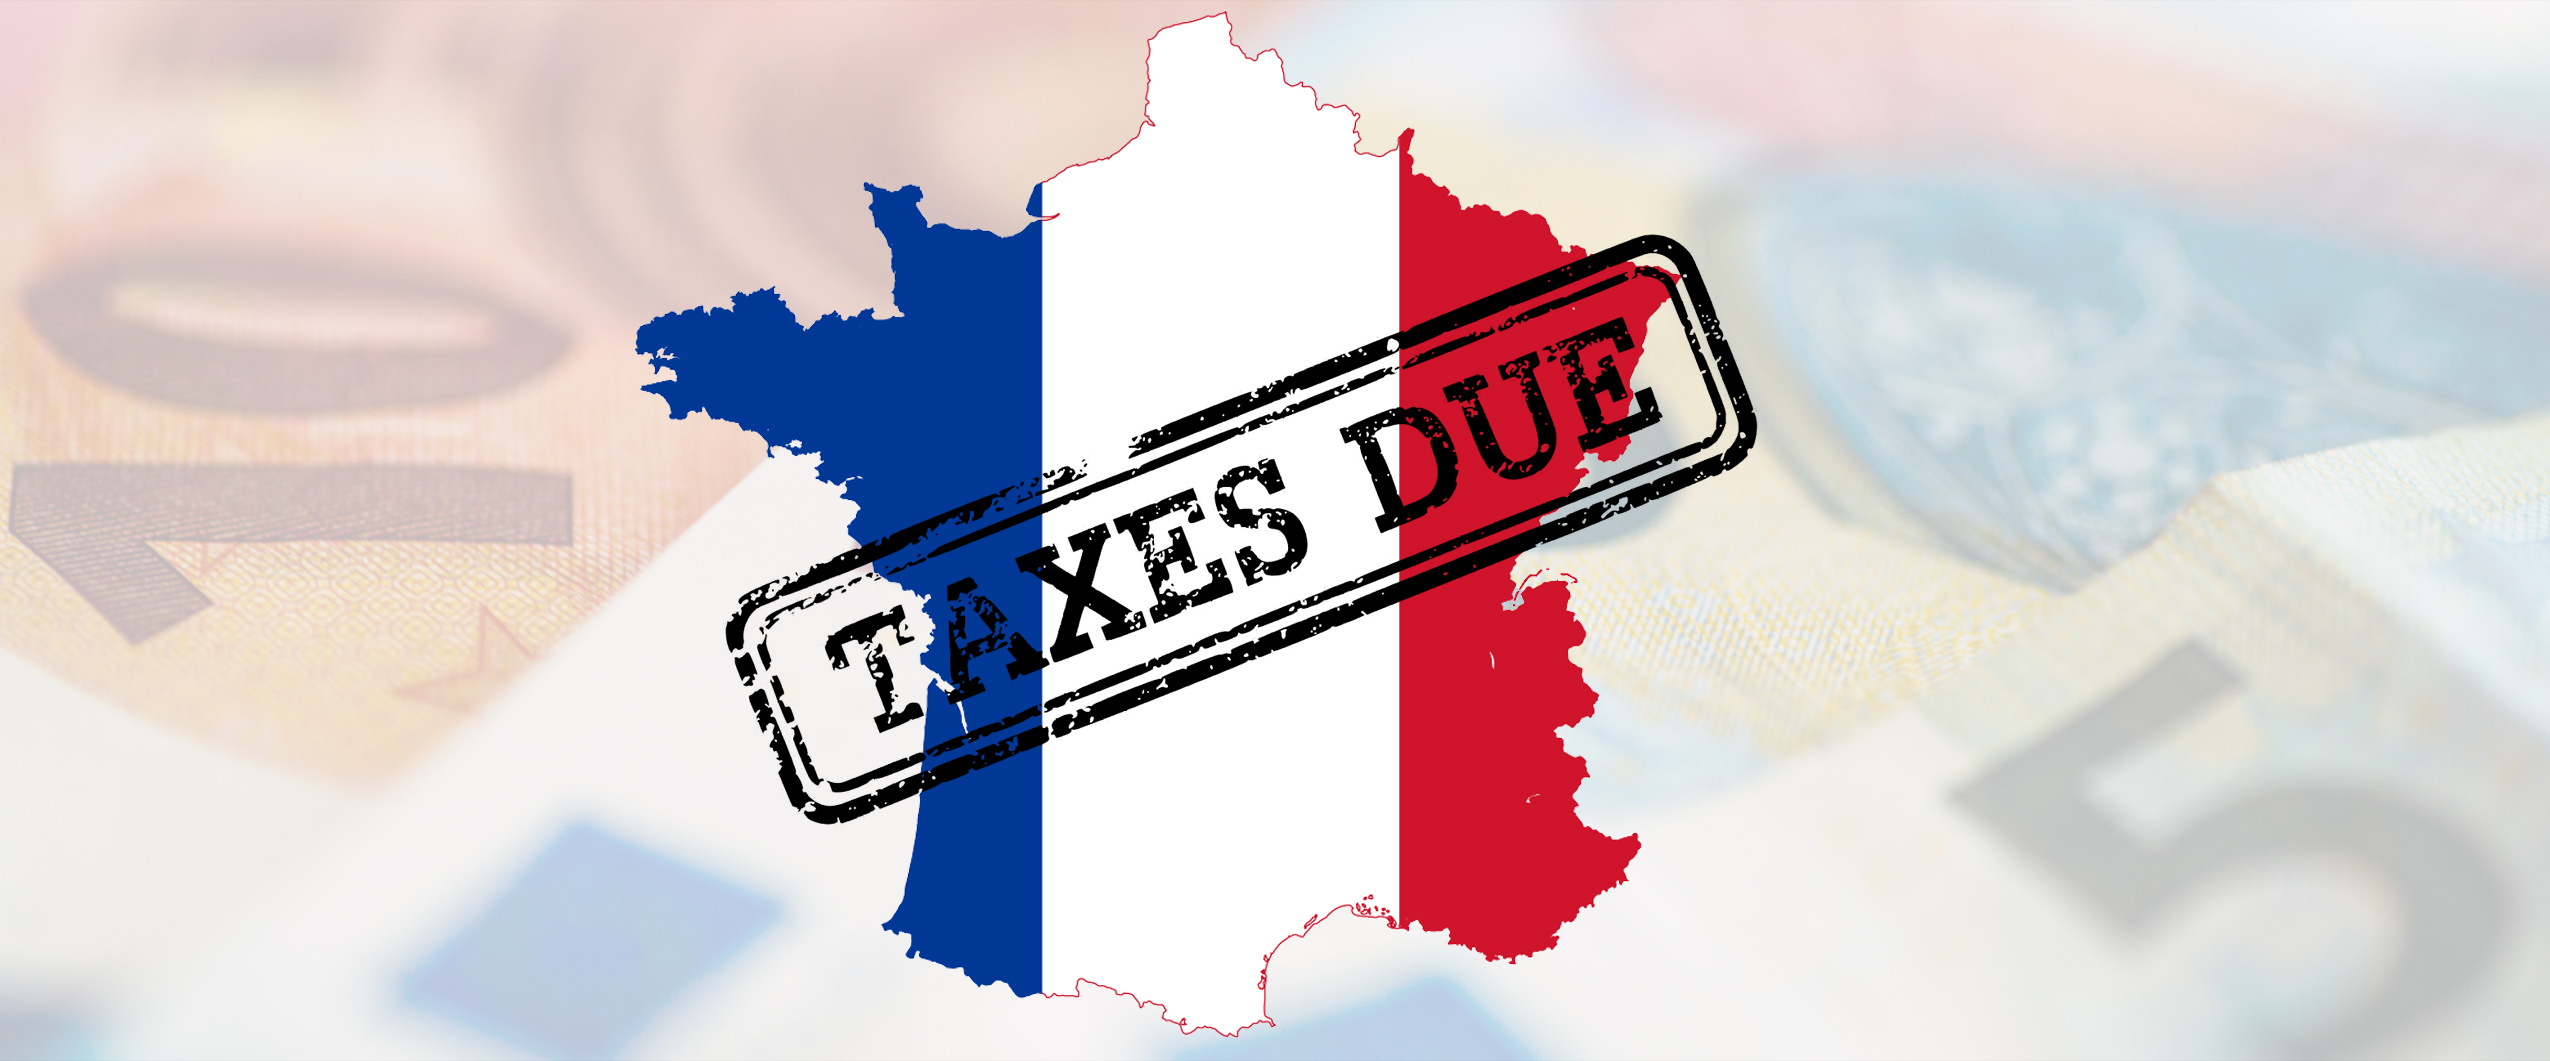 Франция введет налог на цифровой бизнес, не дожидаясь международных соглашений